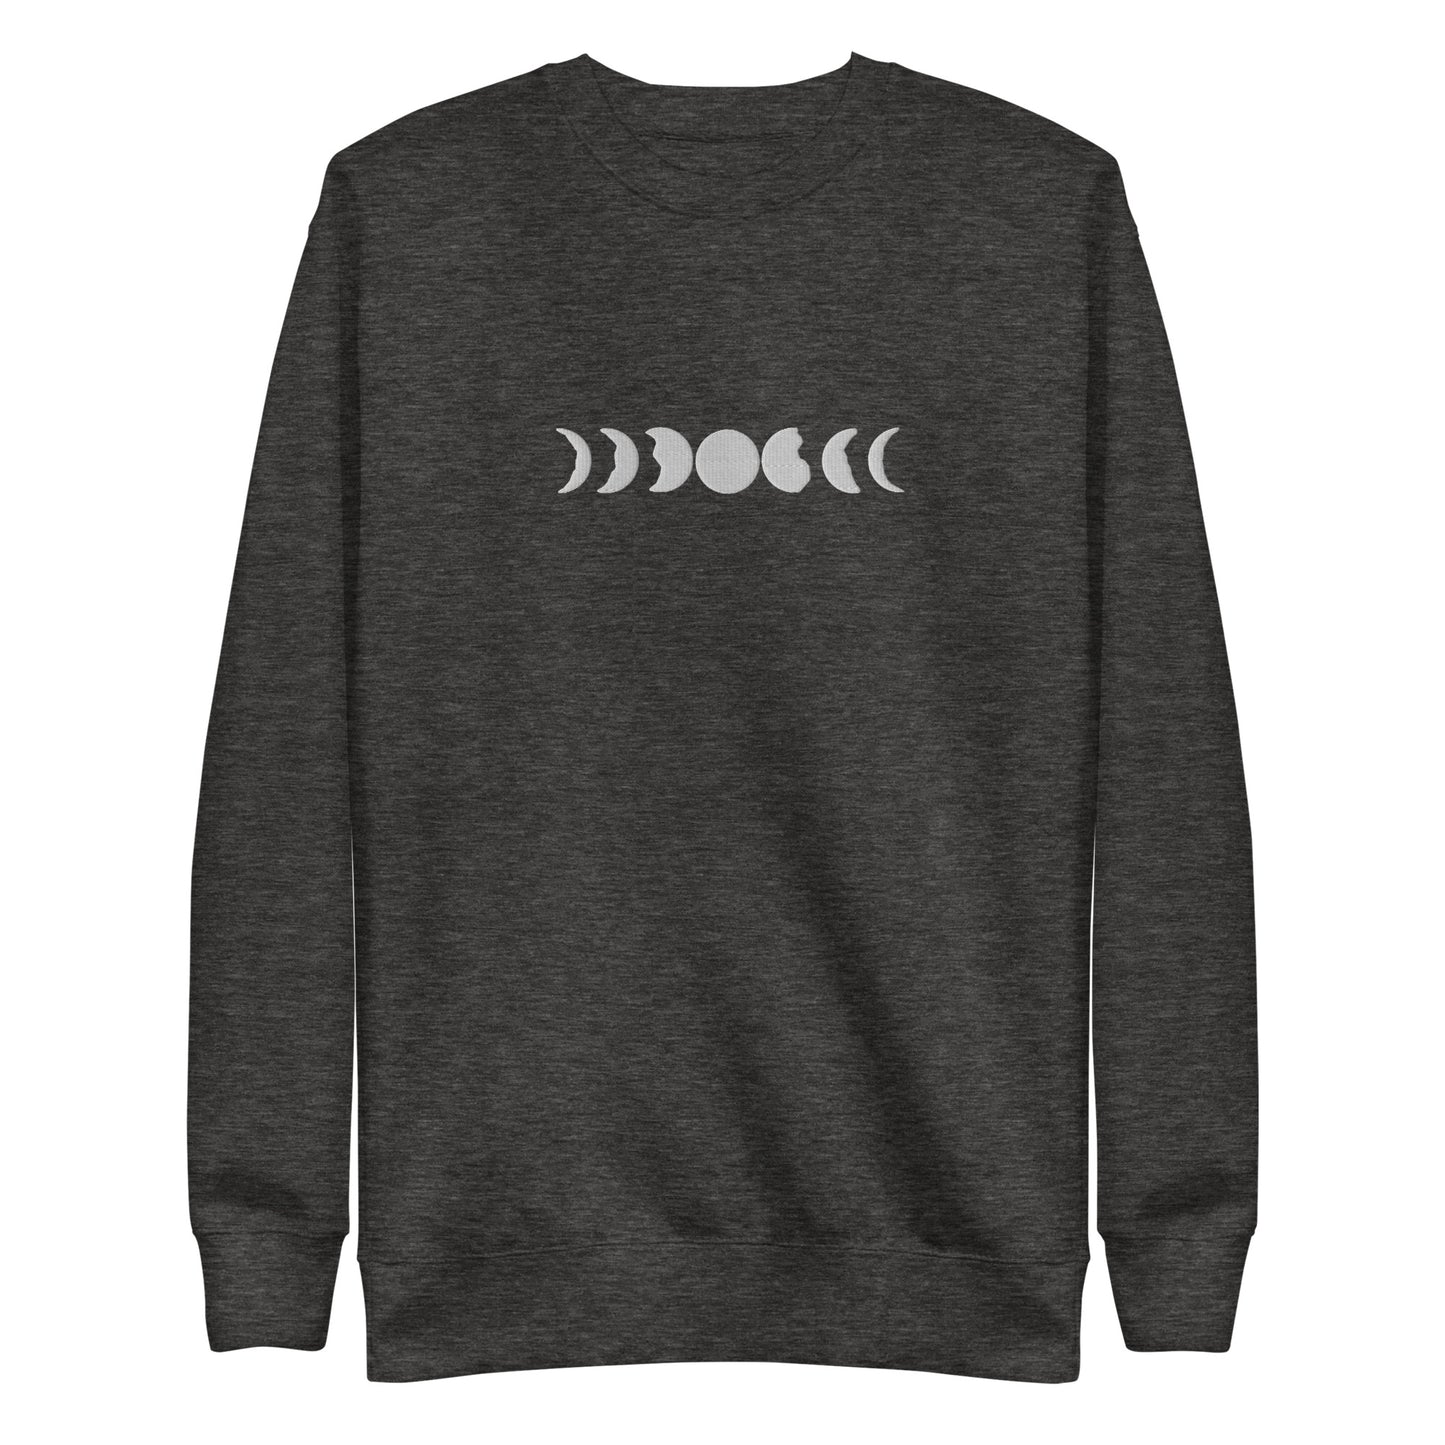 moon phases sweatshirt